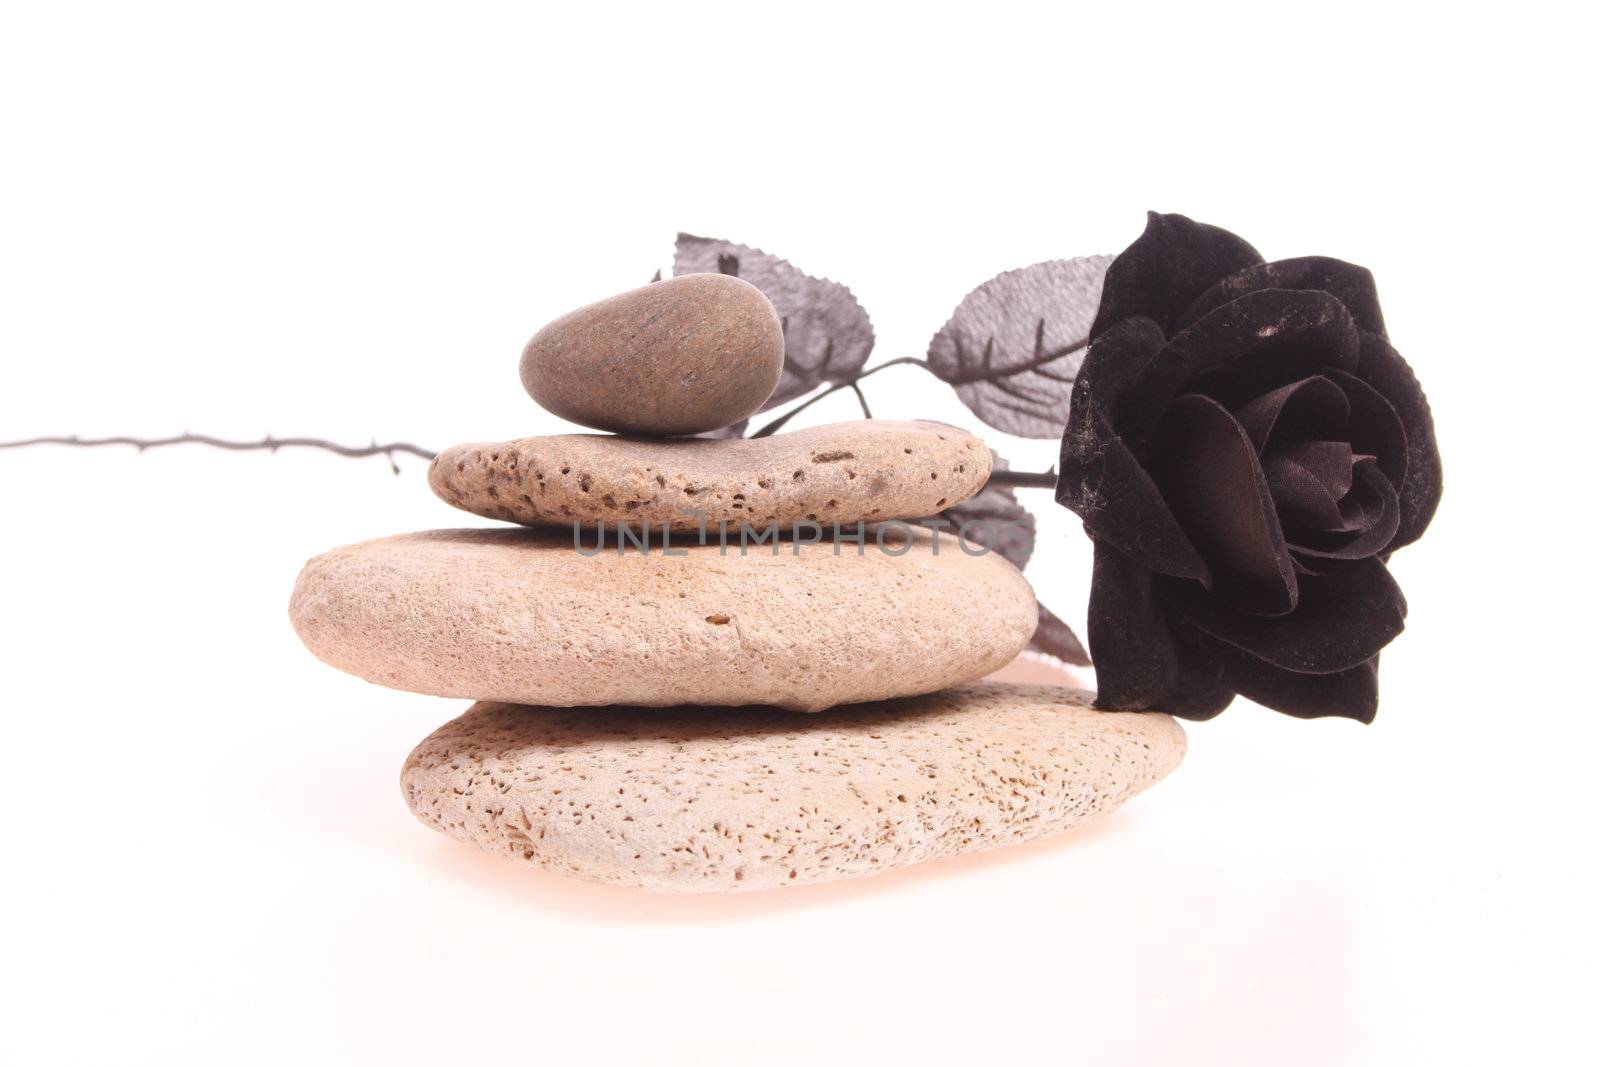 Black rose on a pile of stones by joophoek